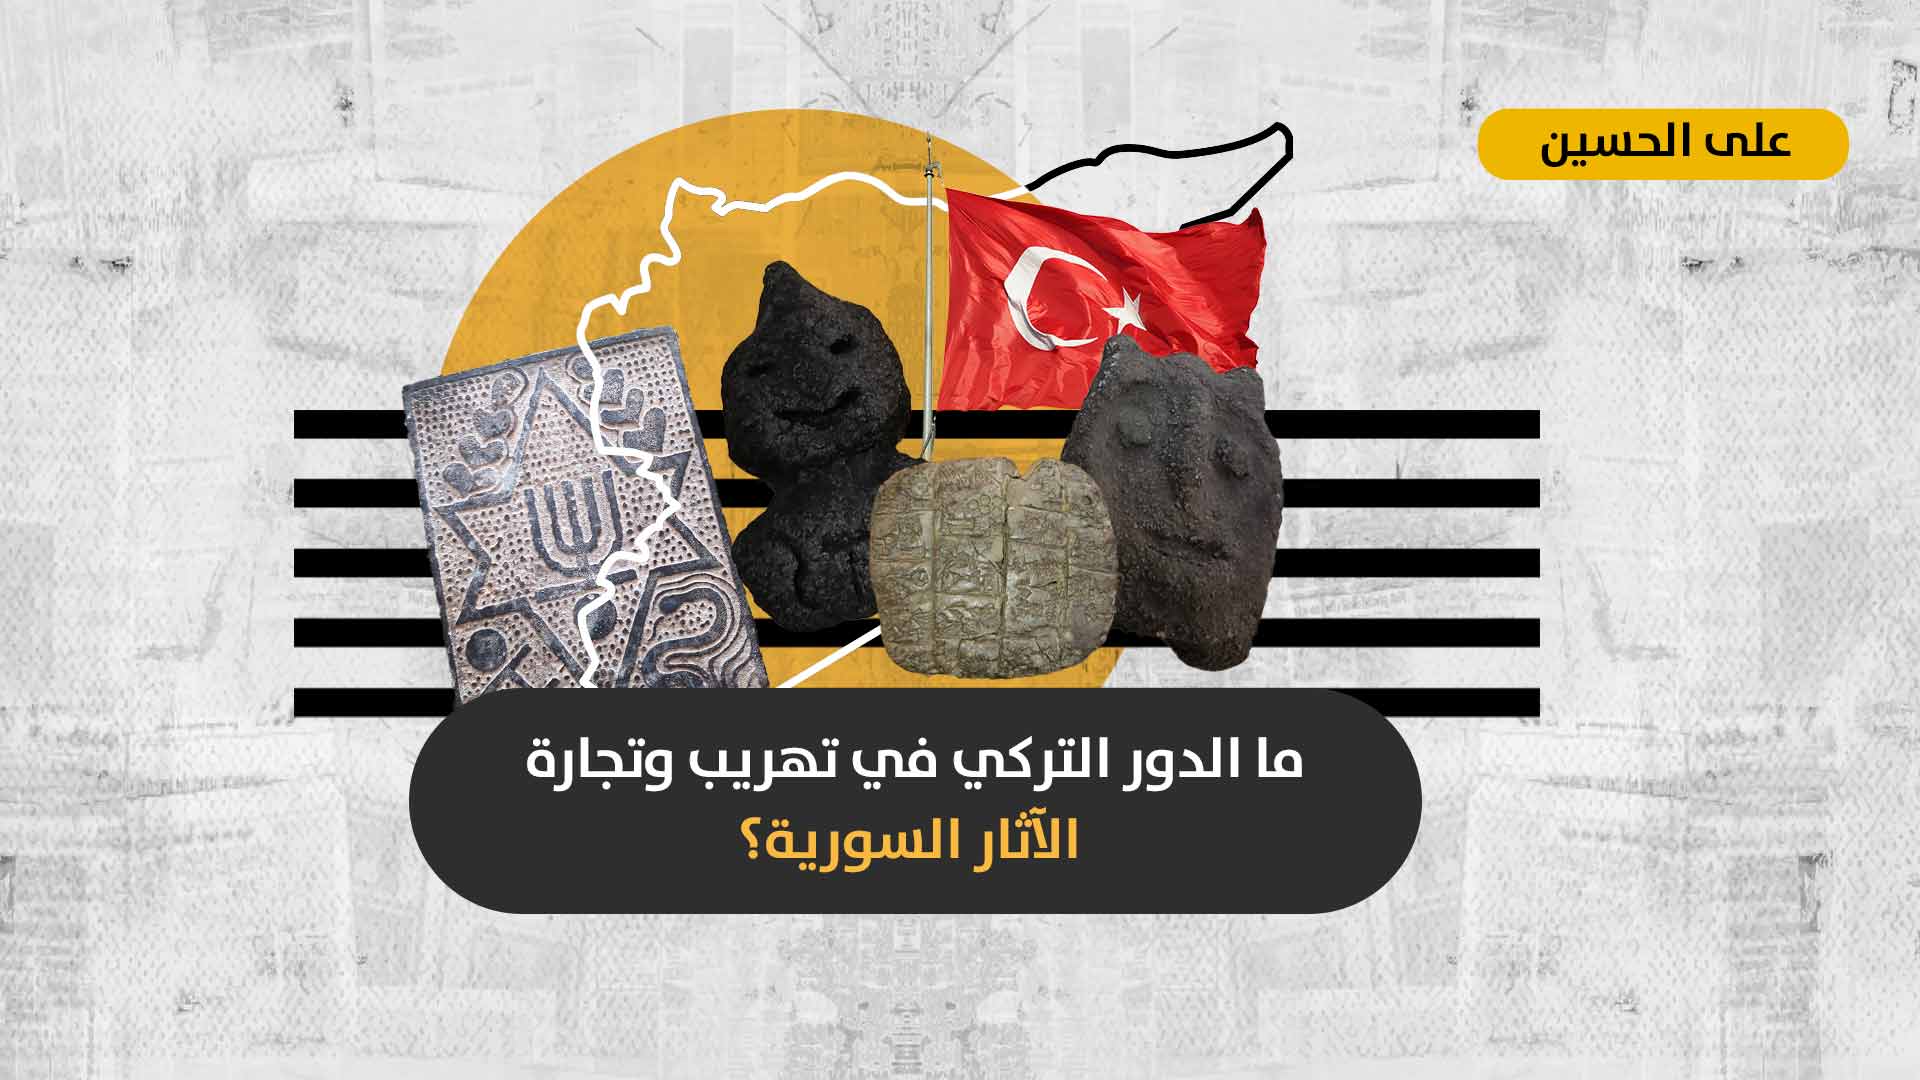 نهب وتخريب الإرث الحضاري السوري: هل أصبحت تركيا الوسيط الأساسي لتجارة الآثار السورية حول العالم؟